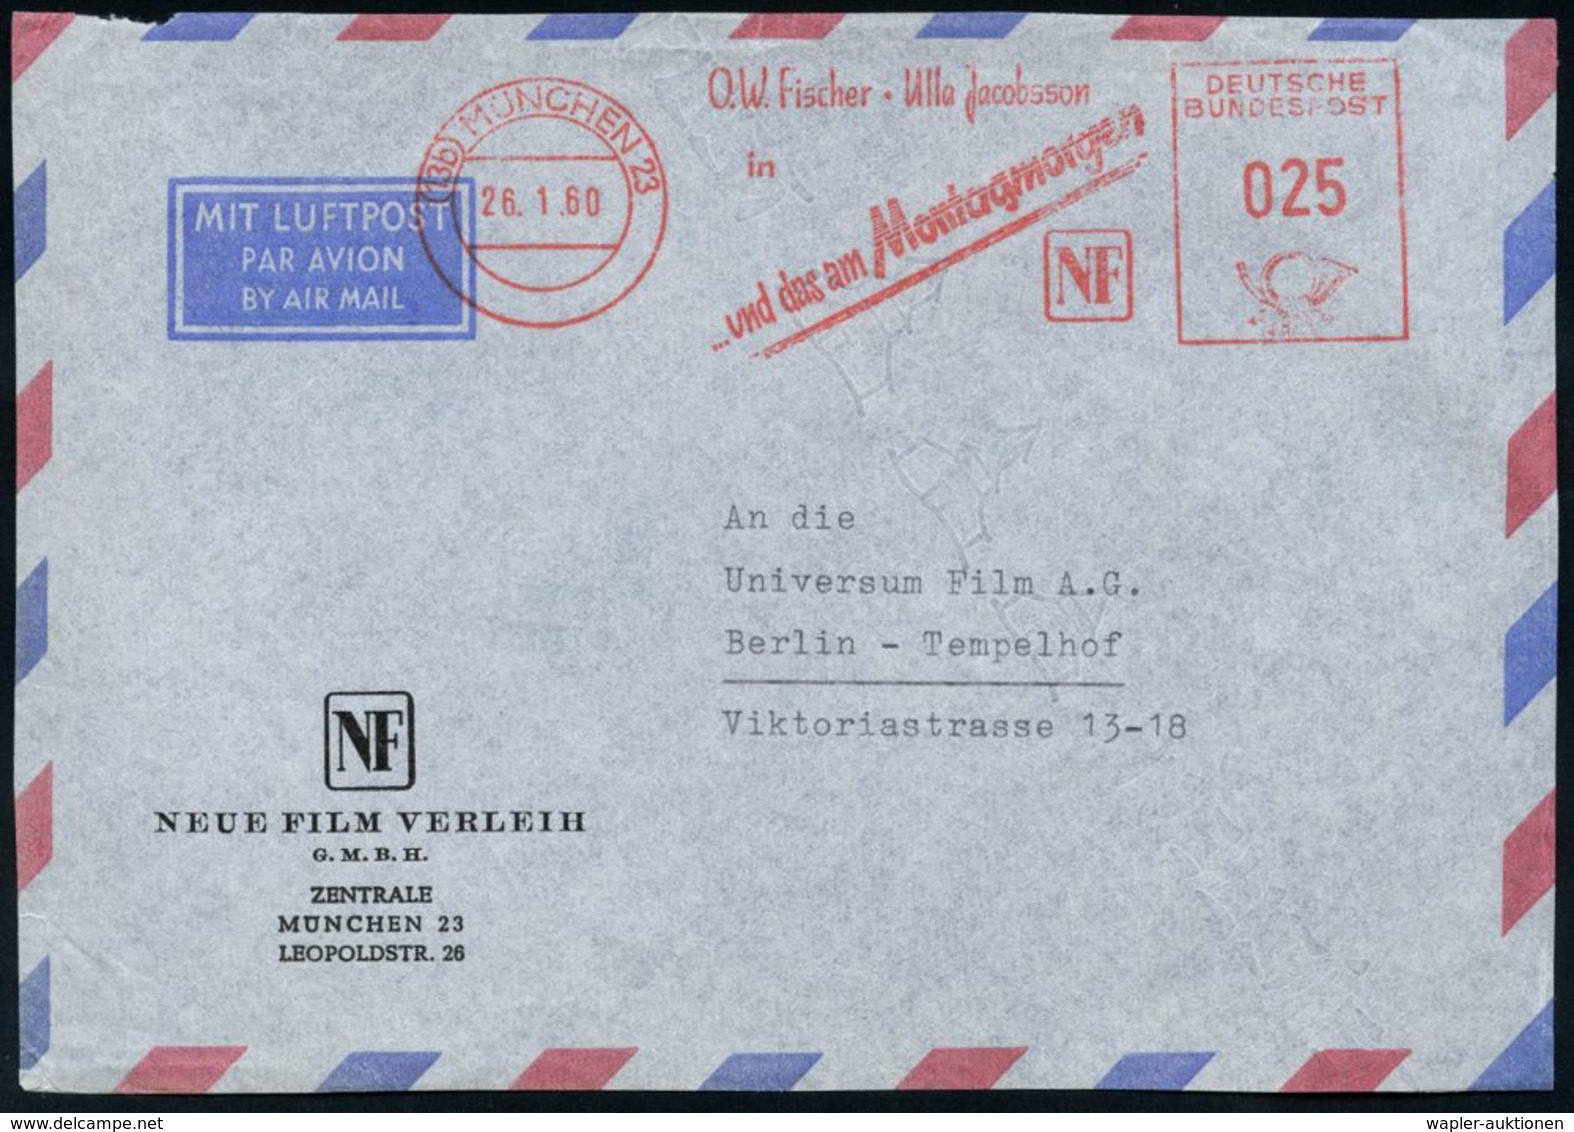 (13b) MÜNCHEN 23/ O.W.Fischer-Ulla Jacobsson/ In/ ..und Das Am Morgengrauen/ NF 1960 (26.1.) Seltener AFS 025 Pf. (Regie - Cinema